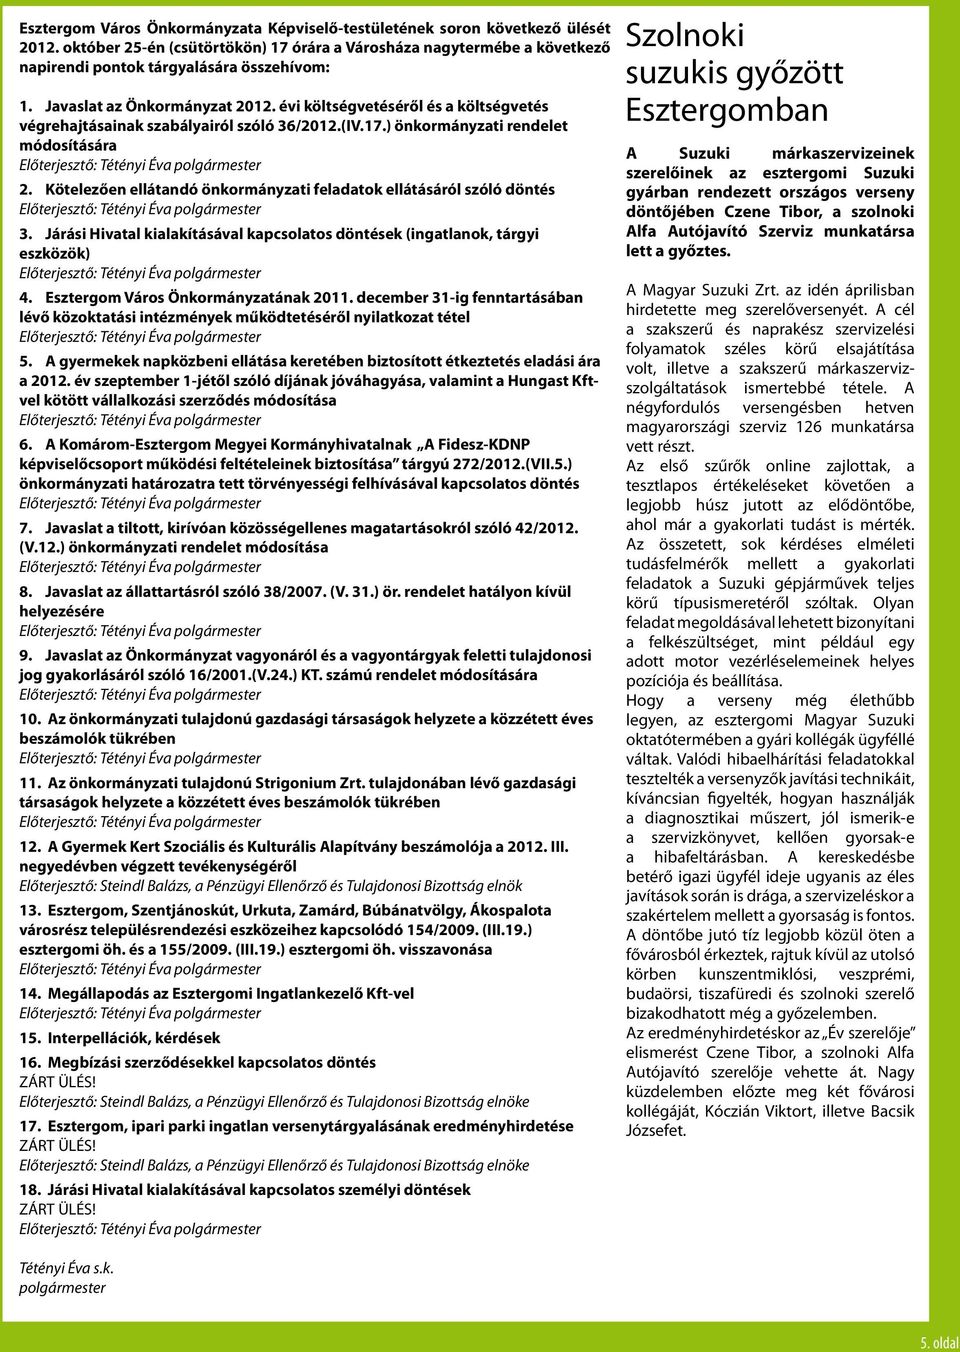 Kötelezően ellátandó önkormányzati feladatok ellátásáról szóló döntés 3. Járási Hivatal kialakításával kapcsolatos döntések (ingatlanok, tárgyi eszközök) 4. Esztergom Város Önkormányzatának 2011.